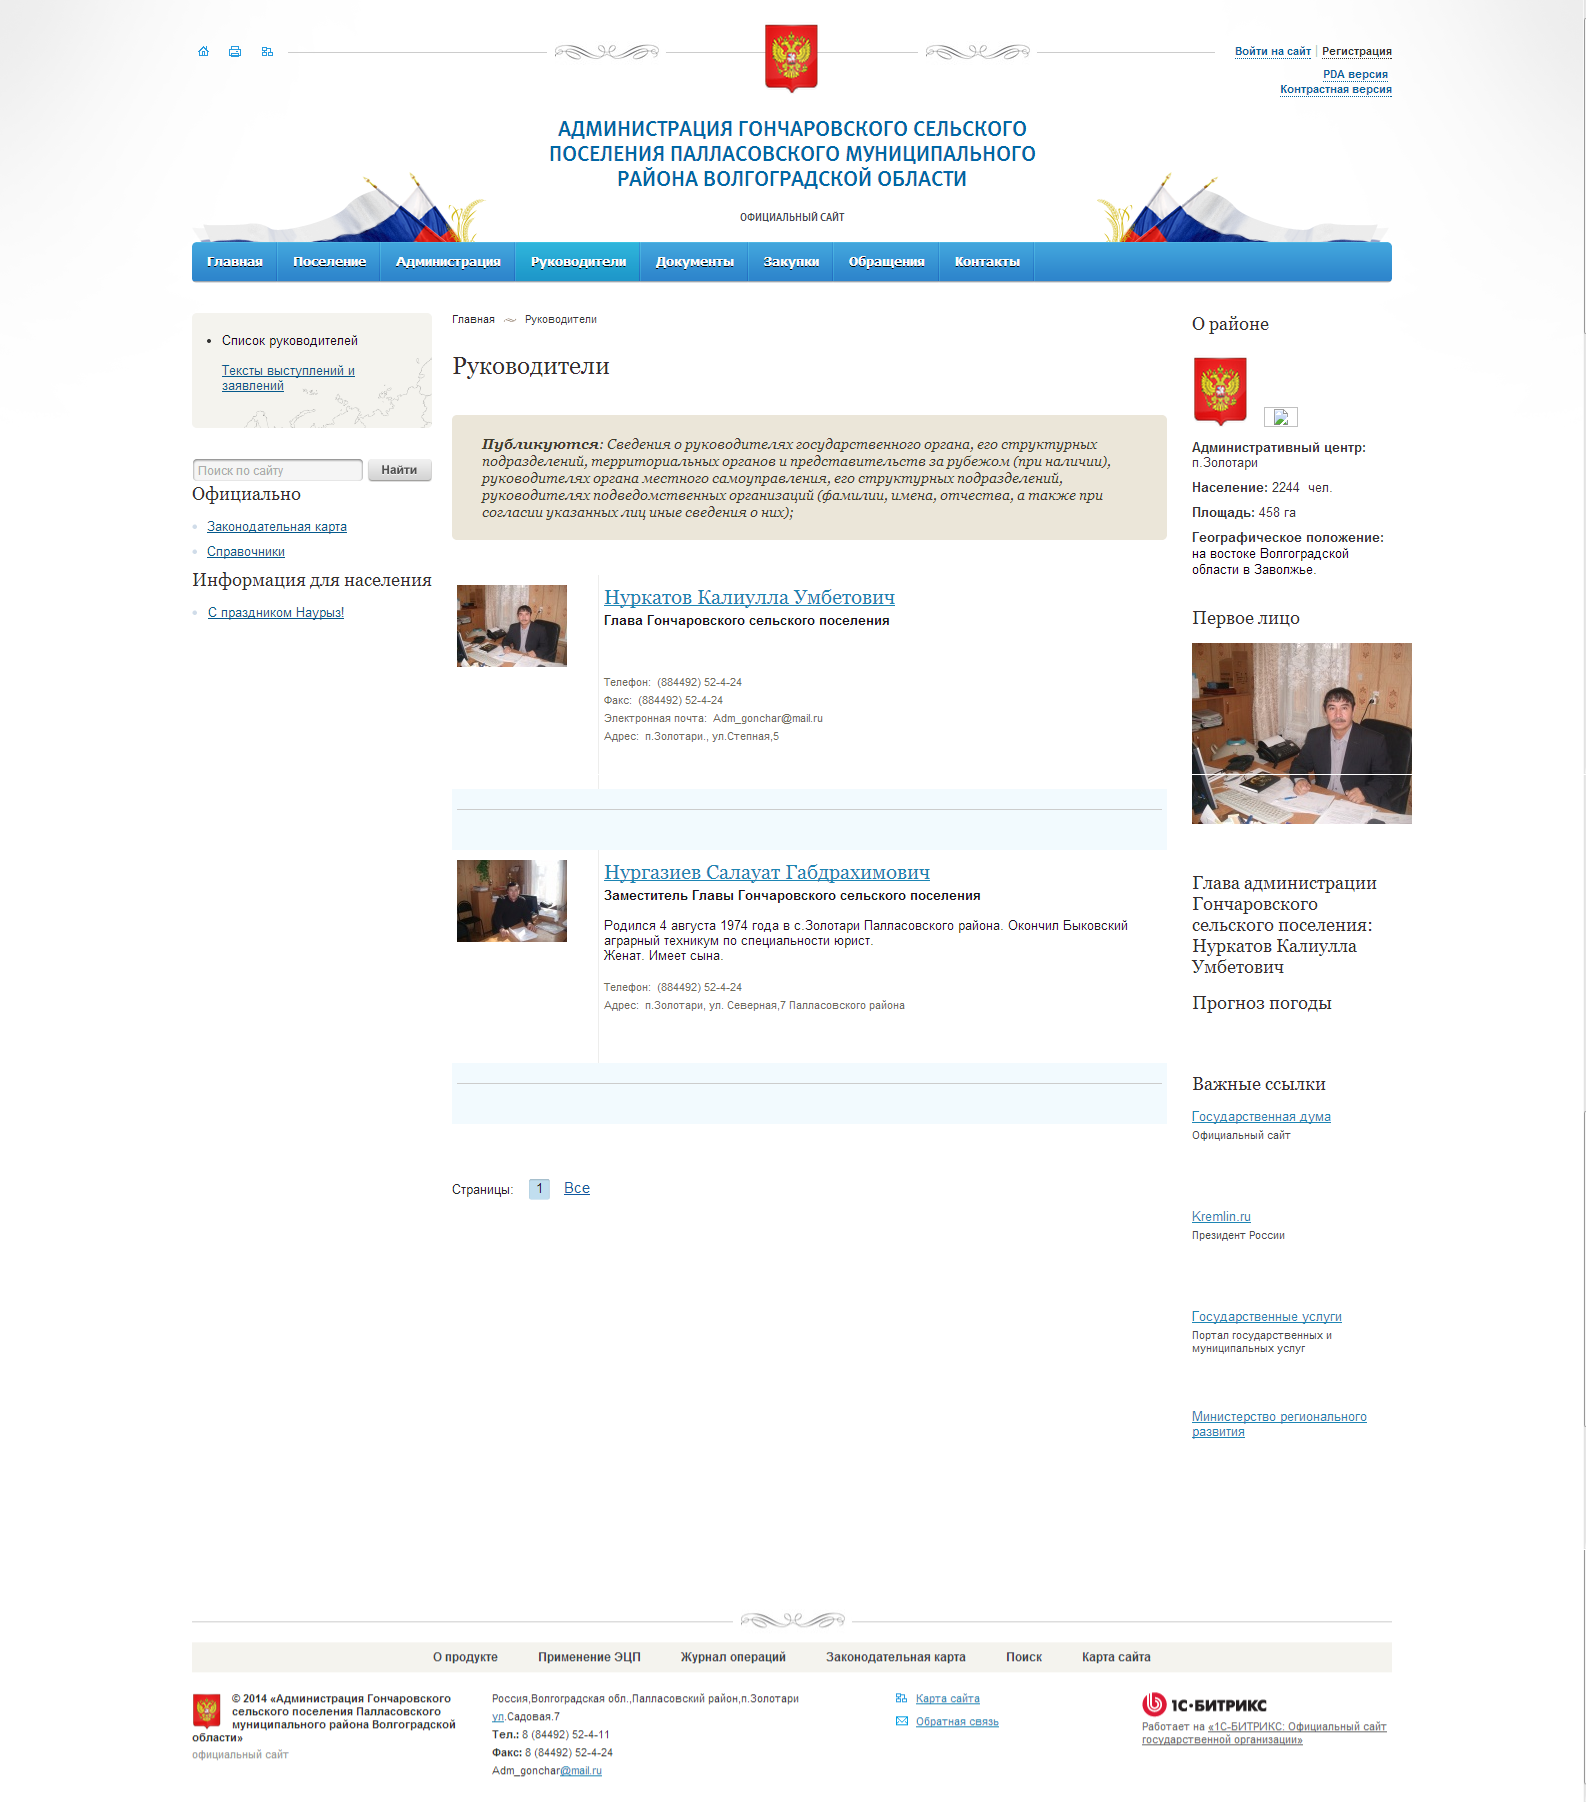 официальный сайт администрации гончаровского сельского поселения